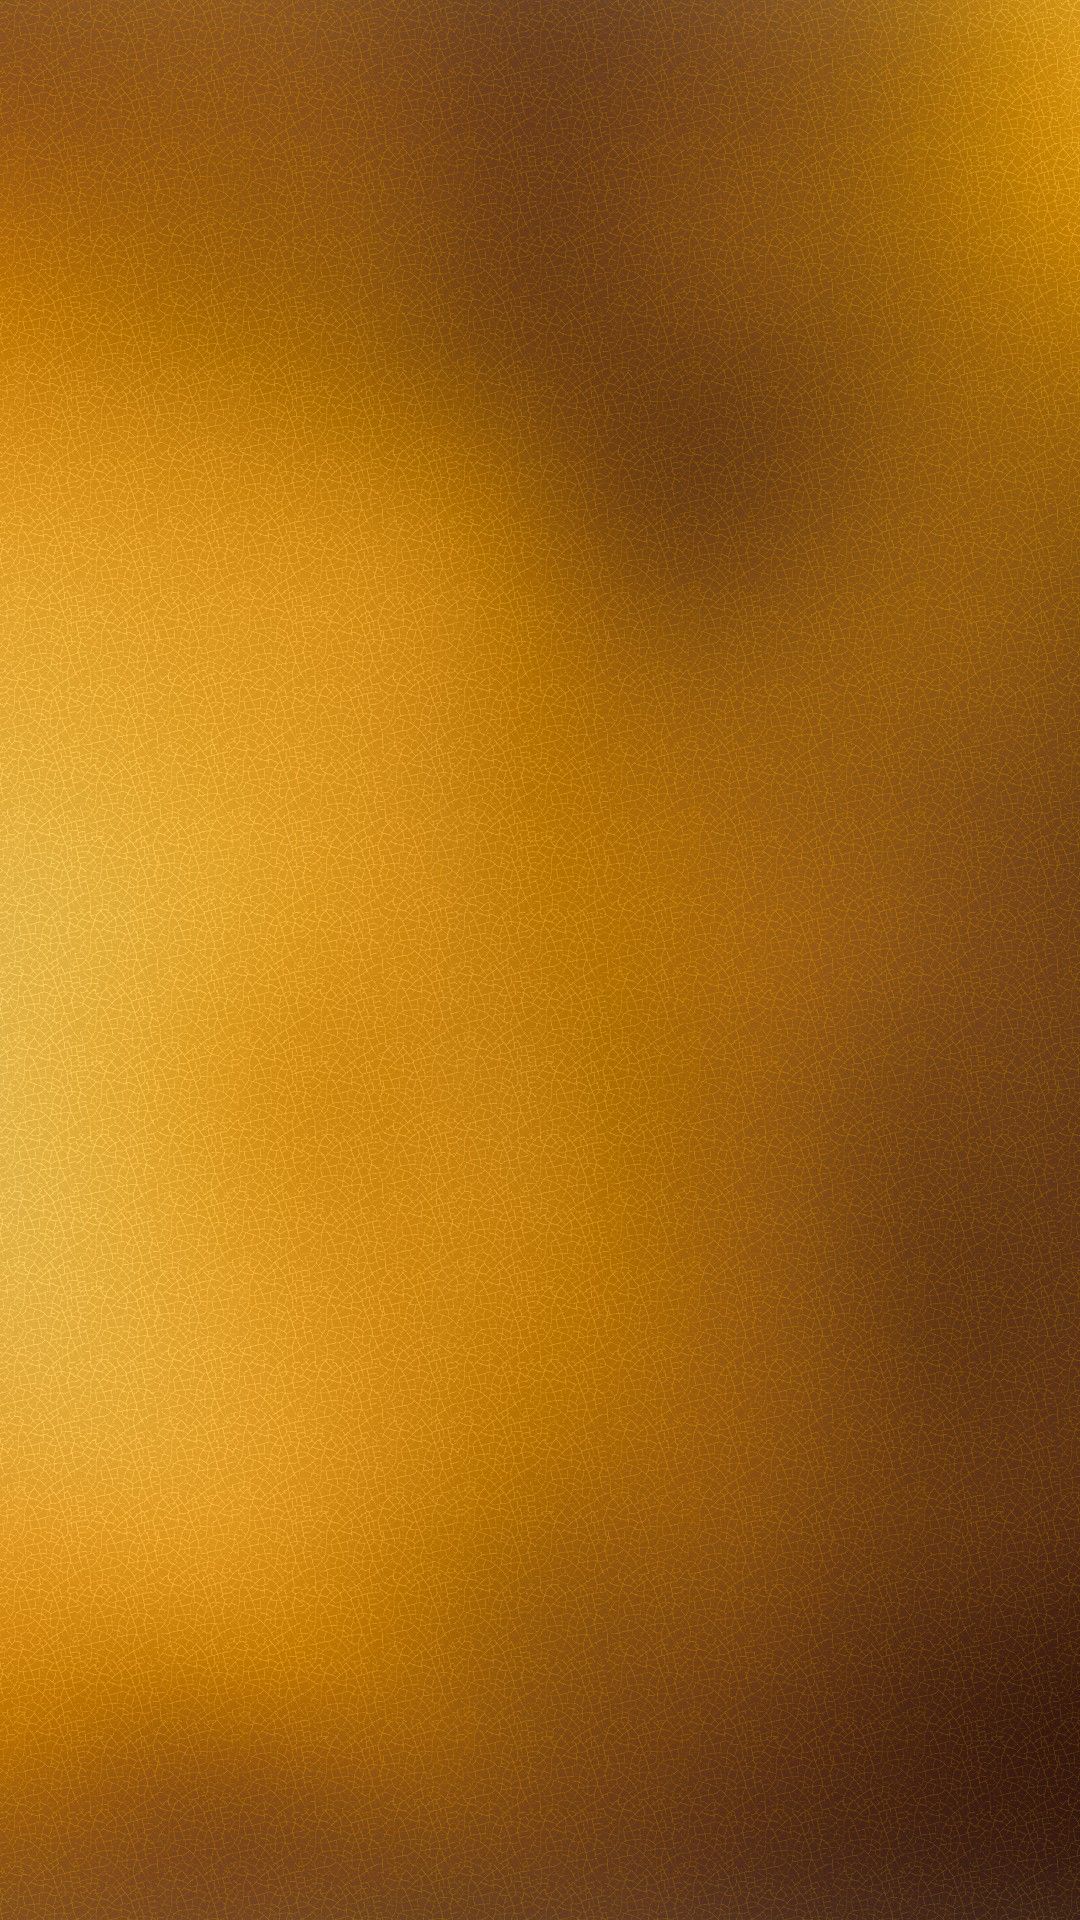 carta da parati color oro,giallo,arancia,cielo,ambra,marrone